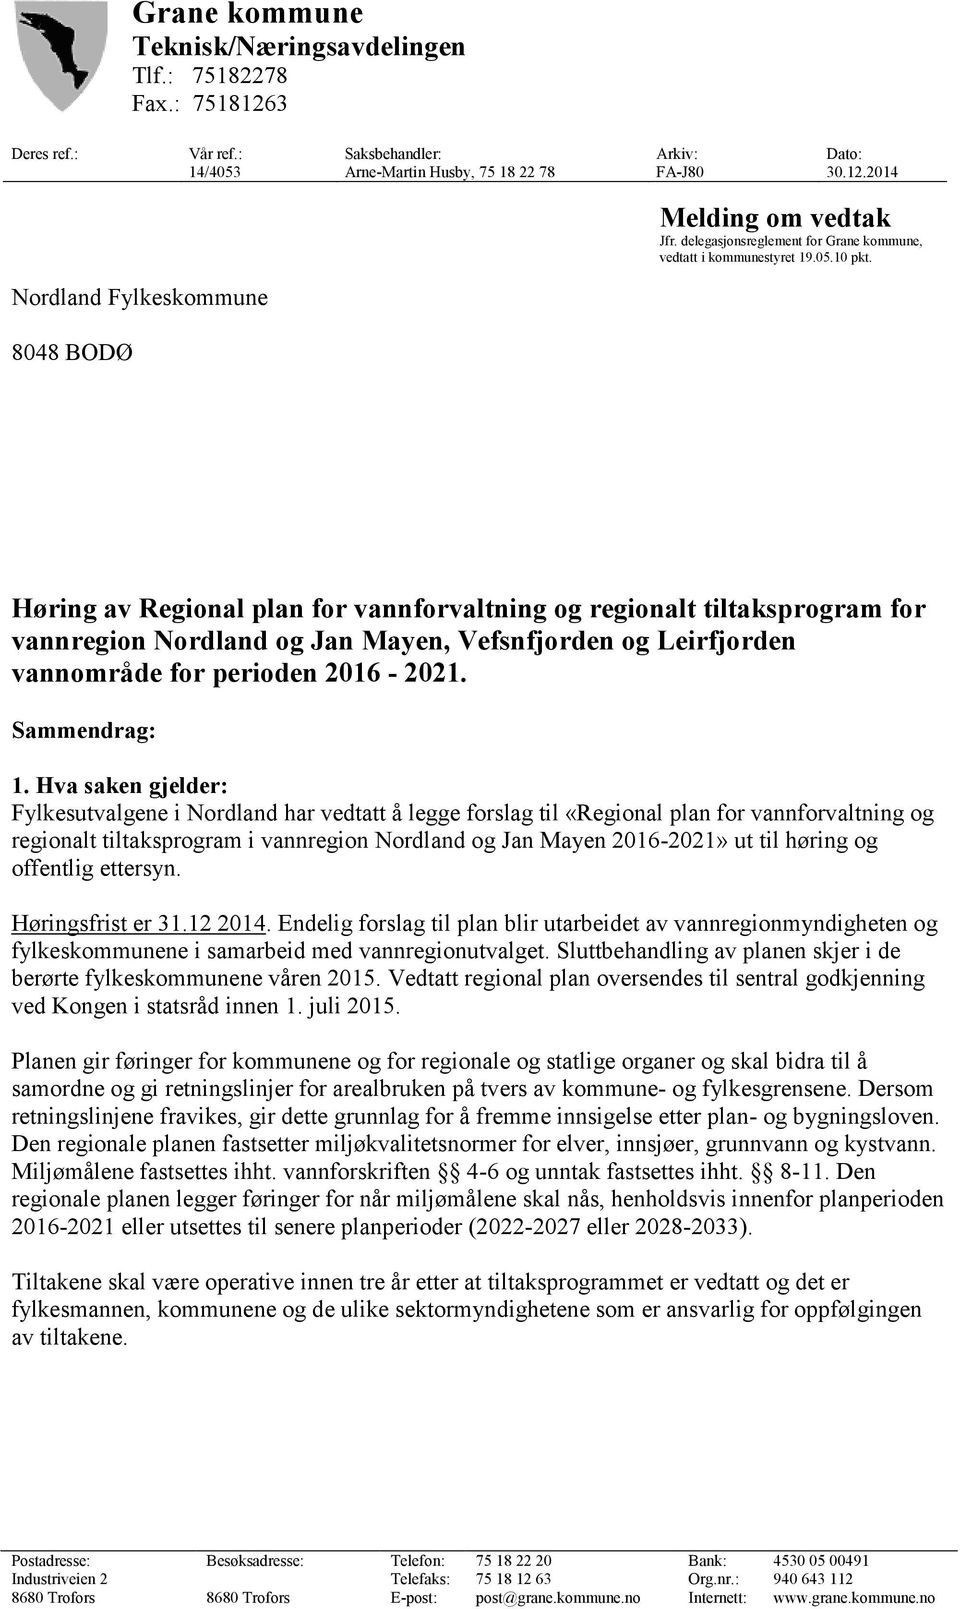 Høring av Regional plan for vannforvaltning og regionalt tiltaksprogram for vannregion Nordland og Jan Mayen, Vefsnfjorden og Leirfjorden vannområde for perioden 2016-2021. Sammendrag: 1.